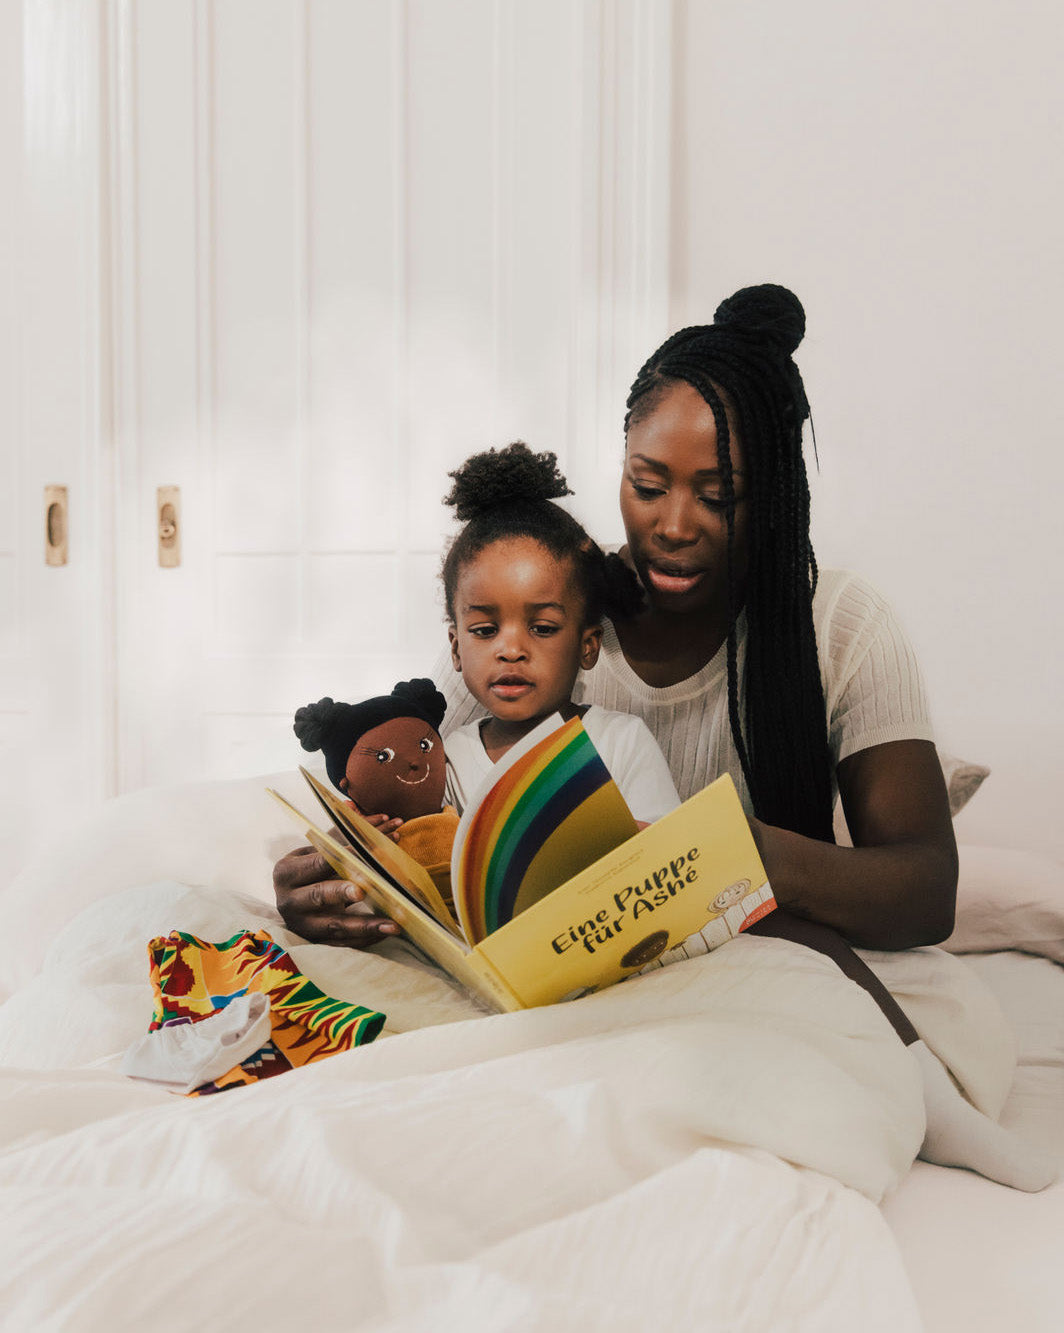 Mutter liest Kinderbuch vor. Kind hält Stoffpuppe in der Hand. Puppenkleidung liegt auf dem weißen Bett